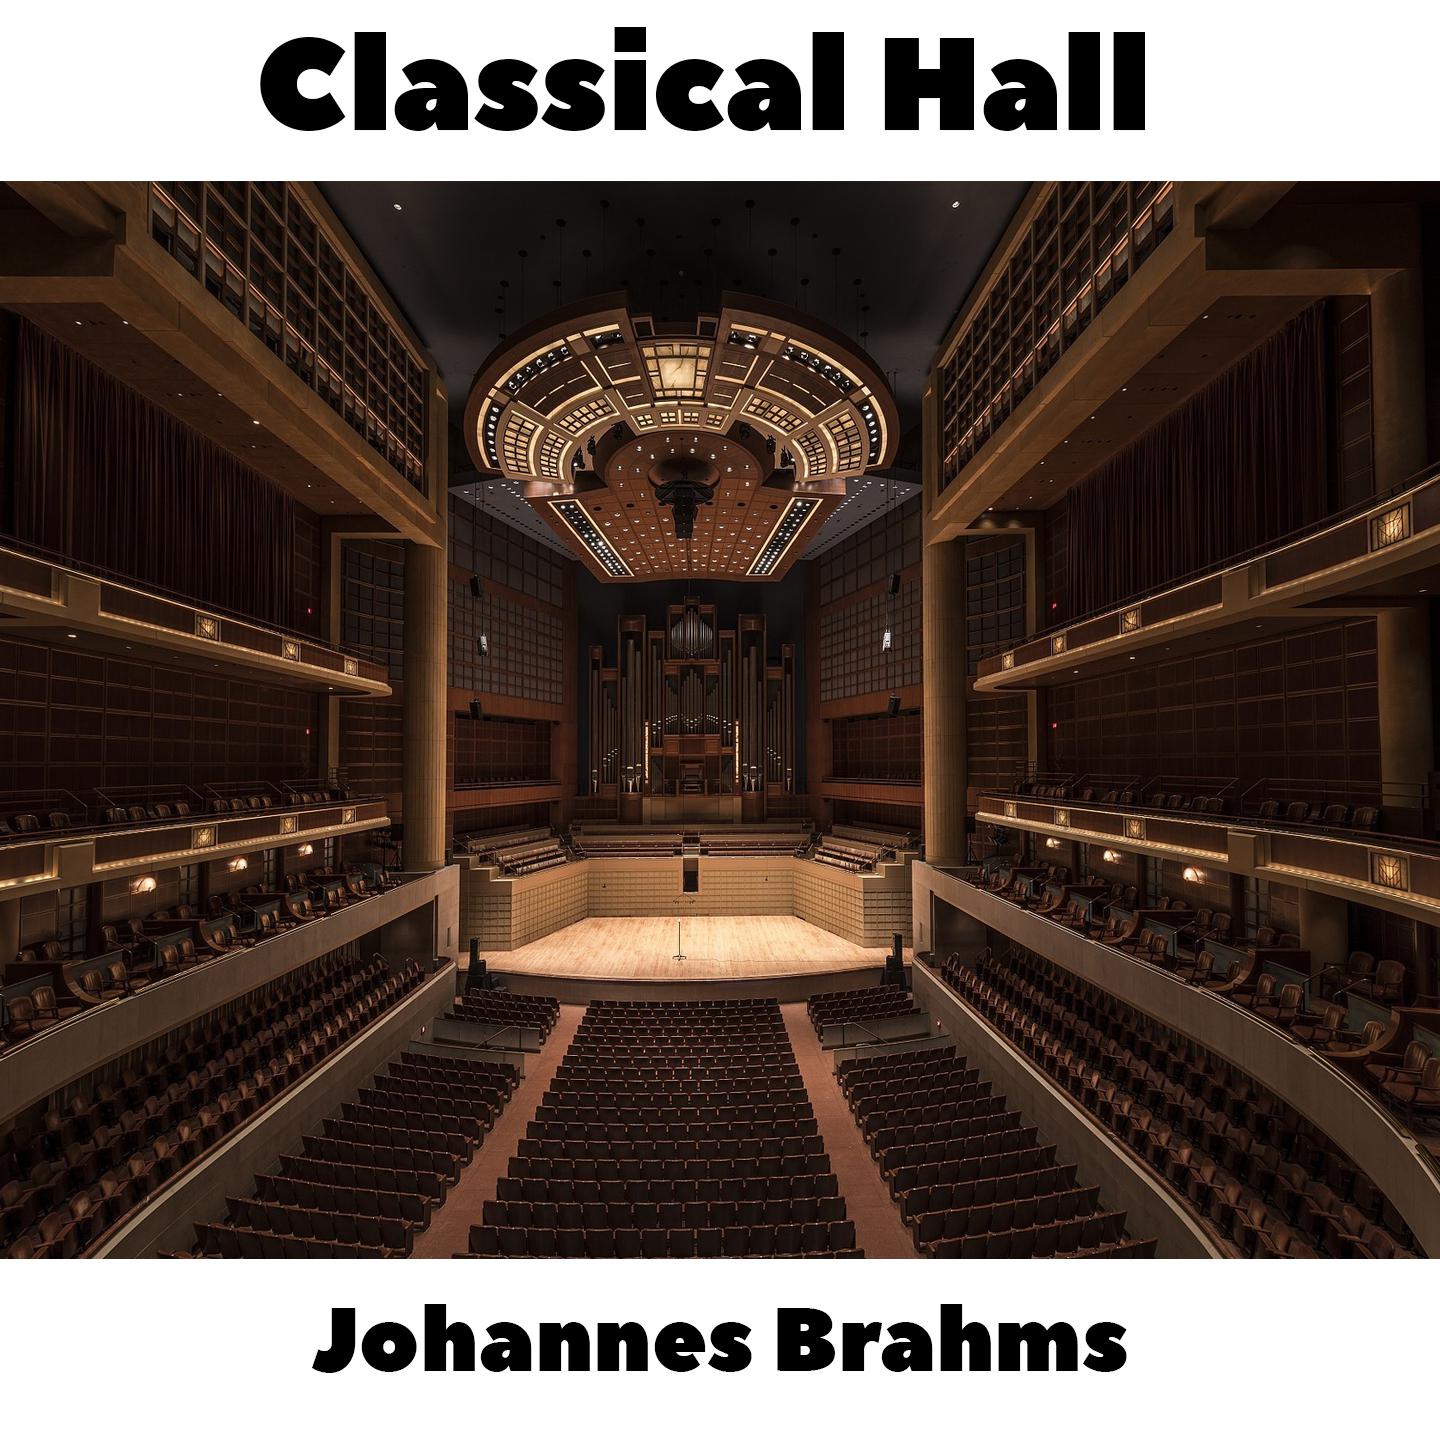 Johannes Brahms -  16 Waltzes, Op.39 - No.7 in C#-